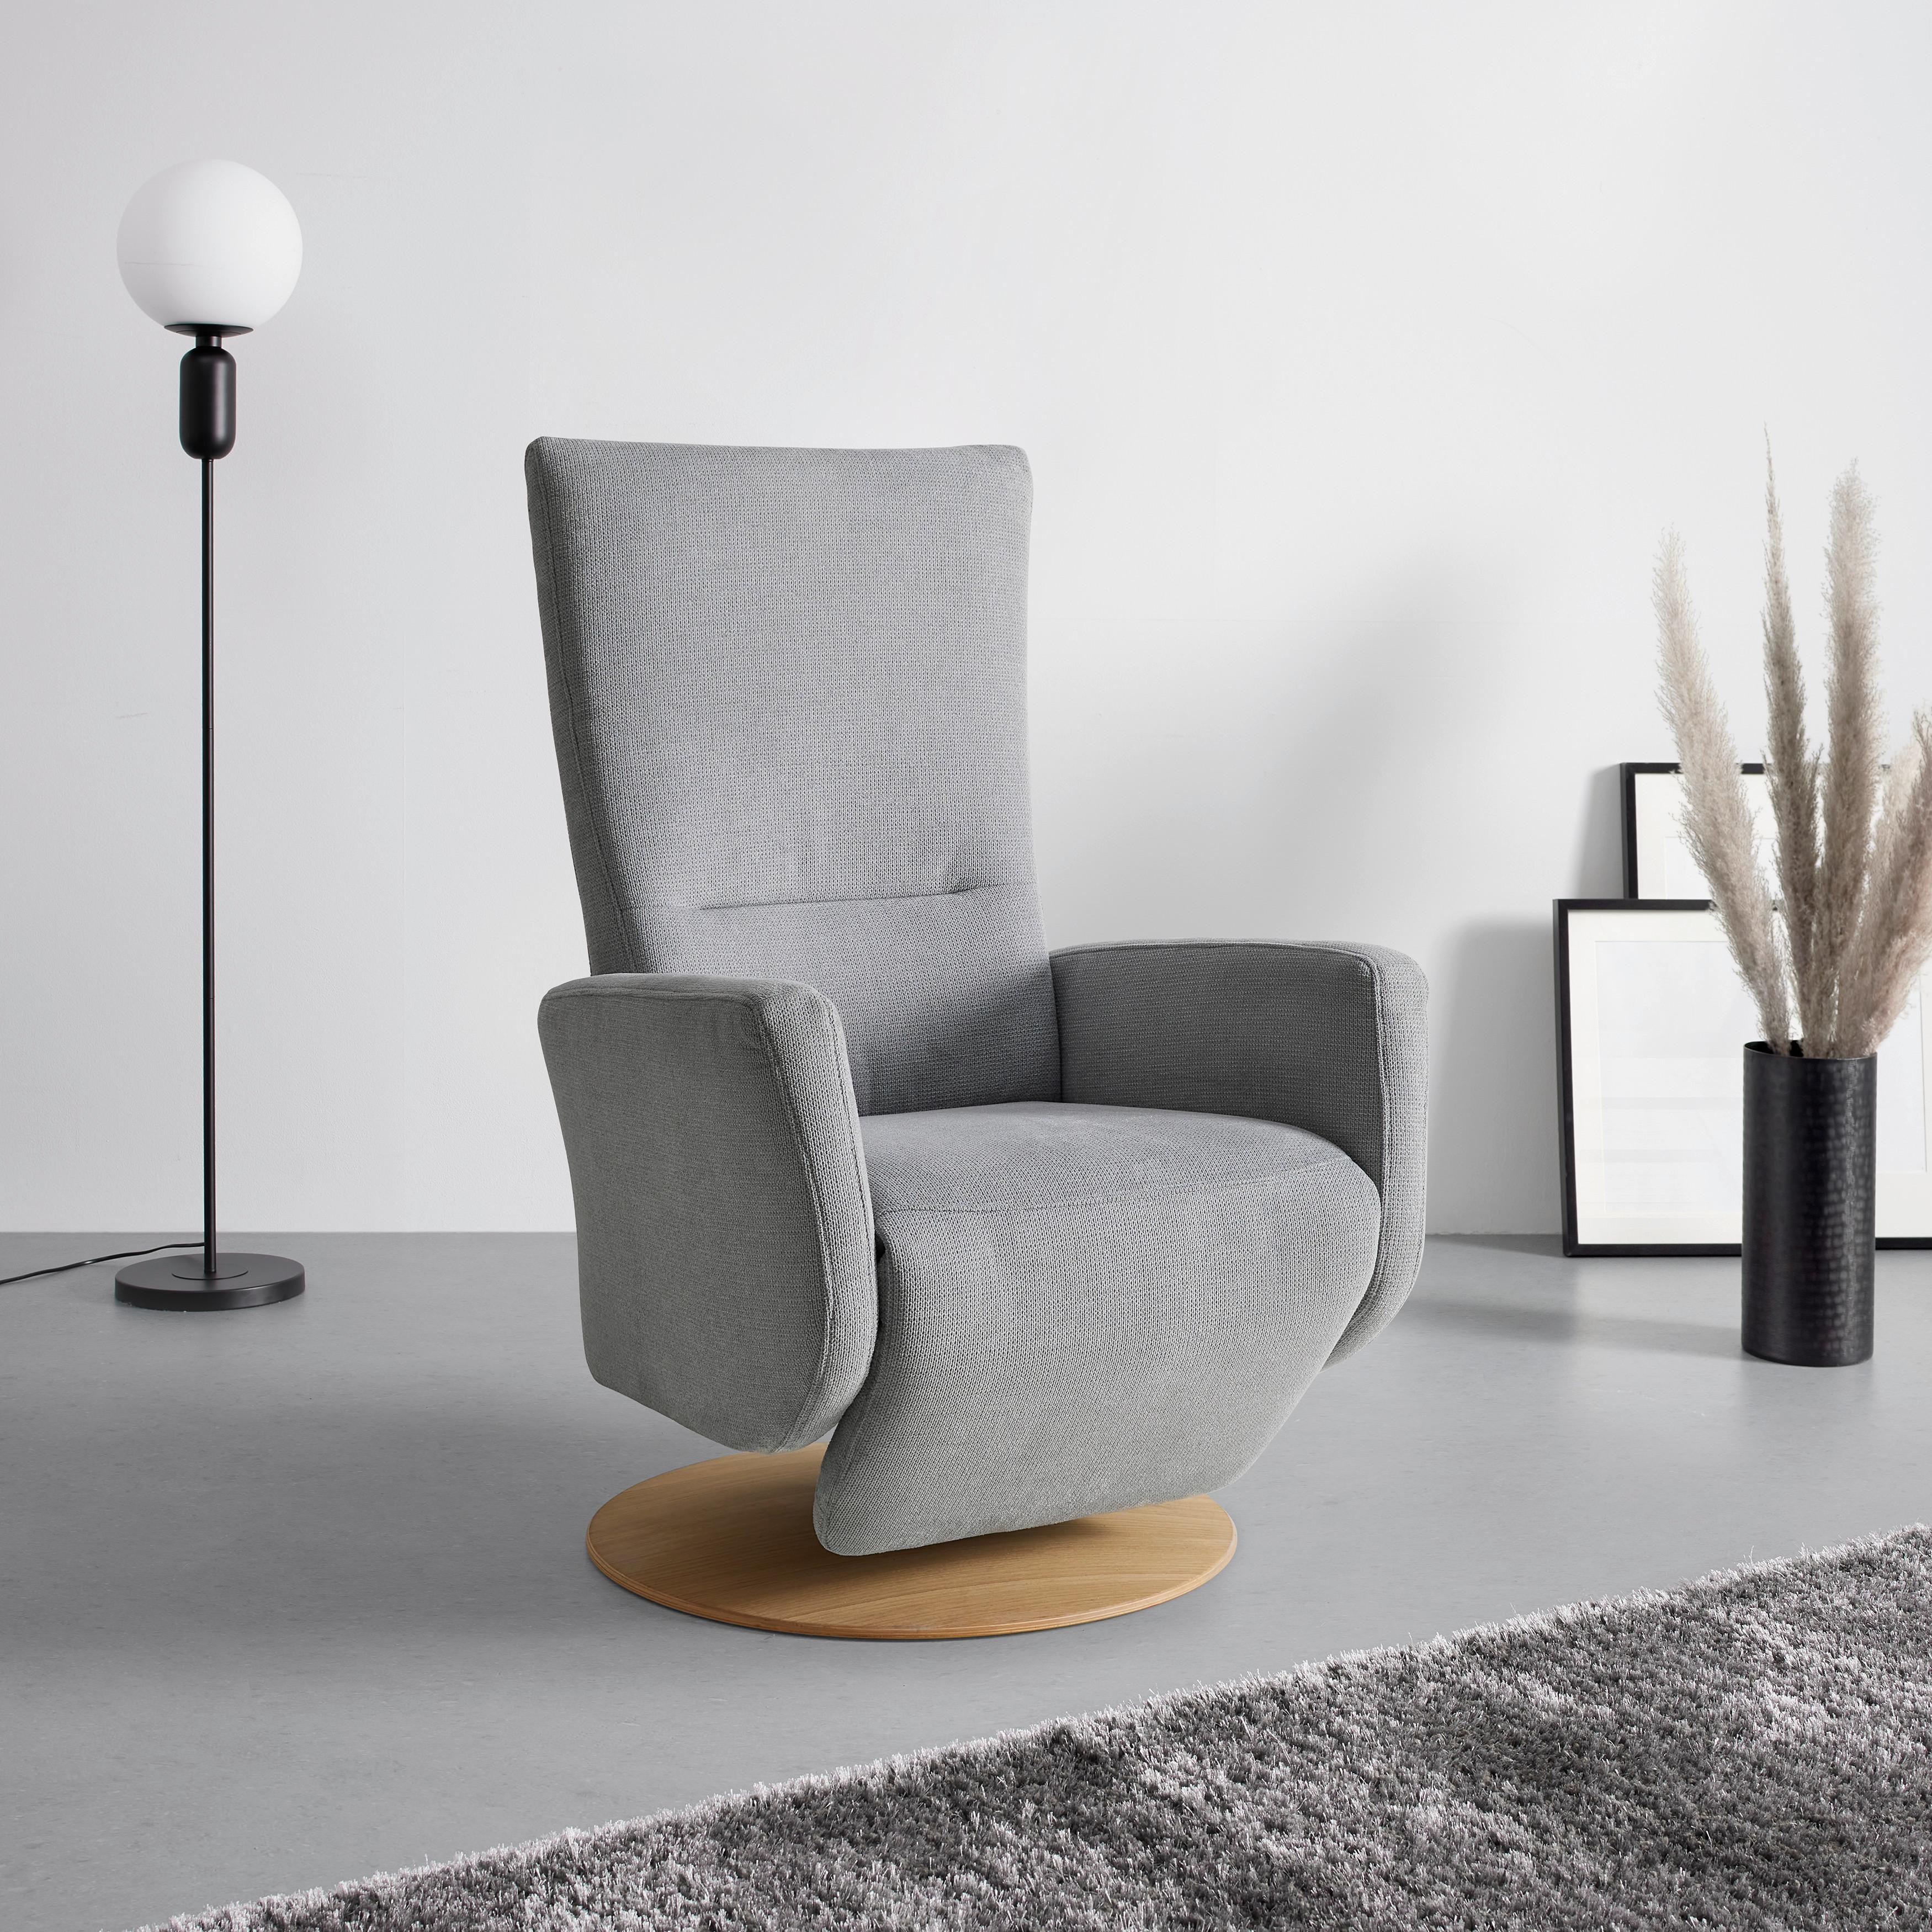 Relaxsessel Sitting 1 in Silber - Wildeiche/Silberfarben, MODERN, Kunststoff/Textil (70/111/80cm) - Premium Living